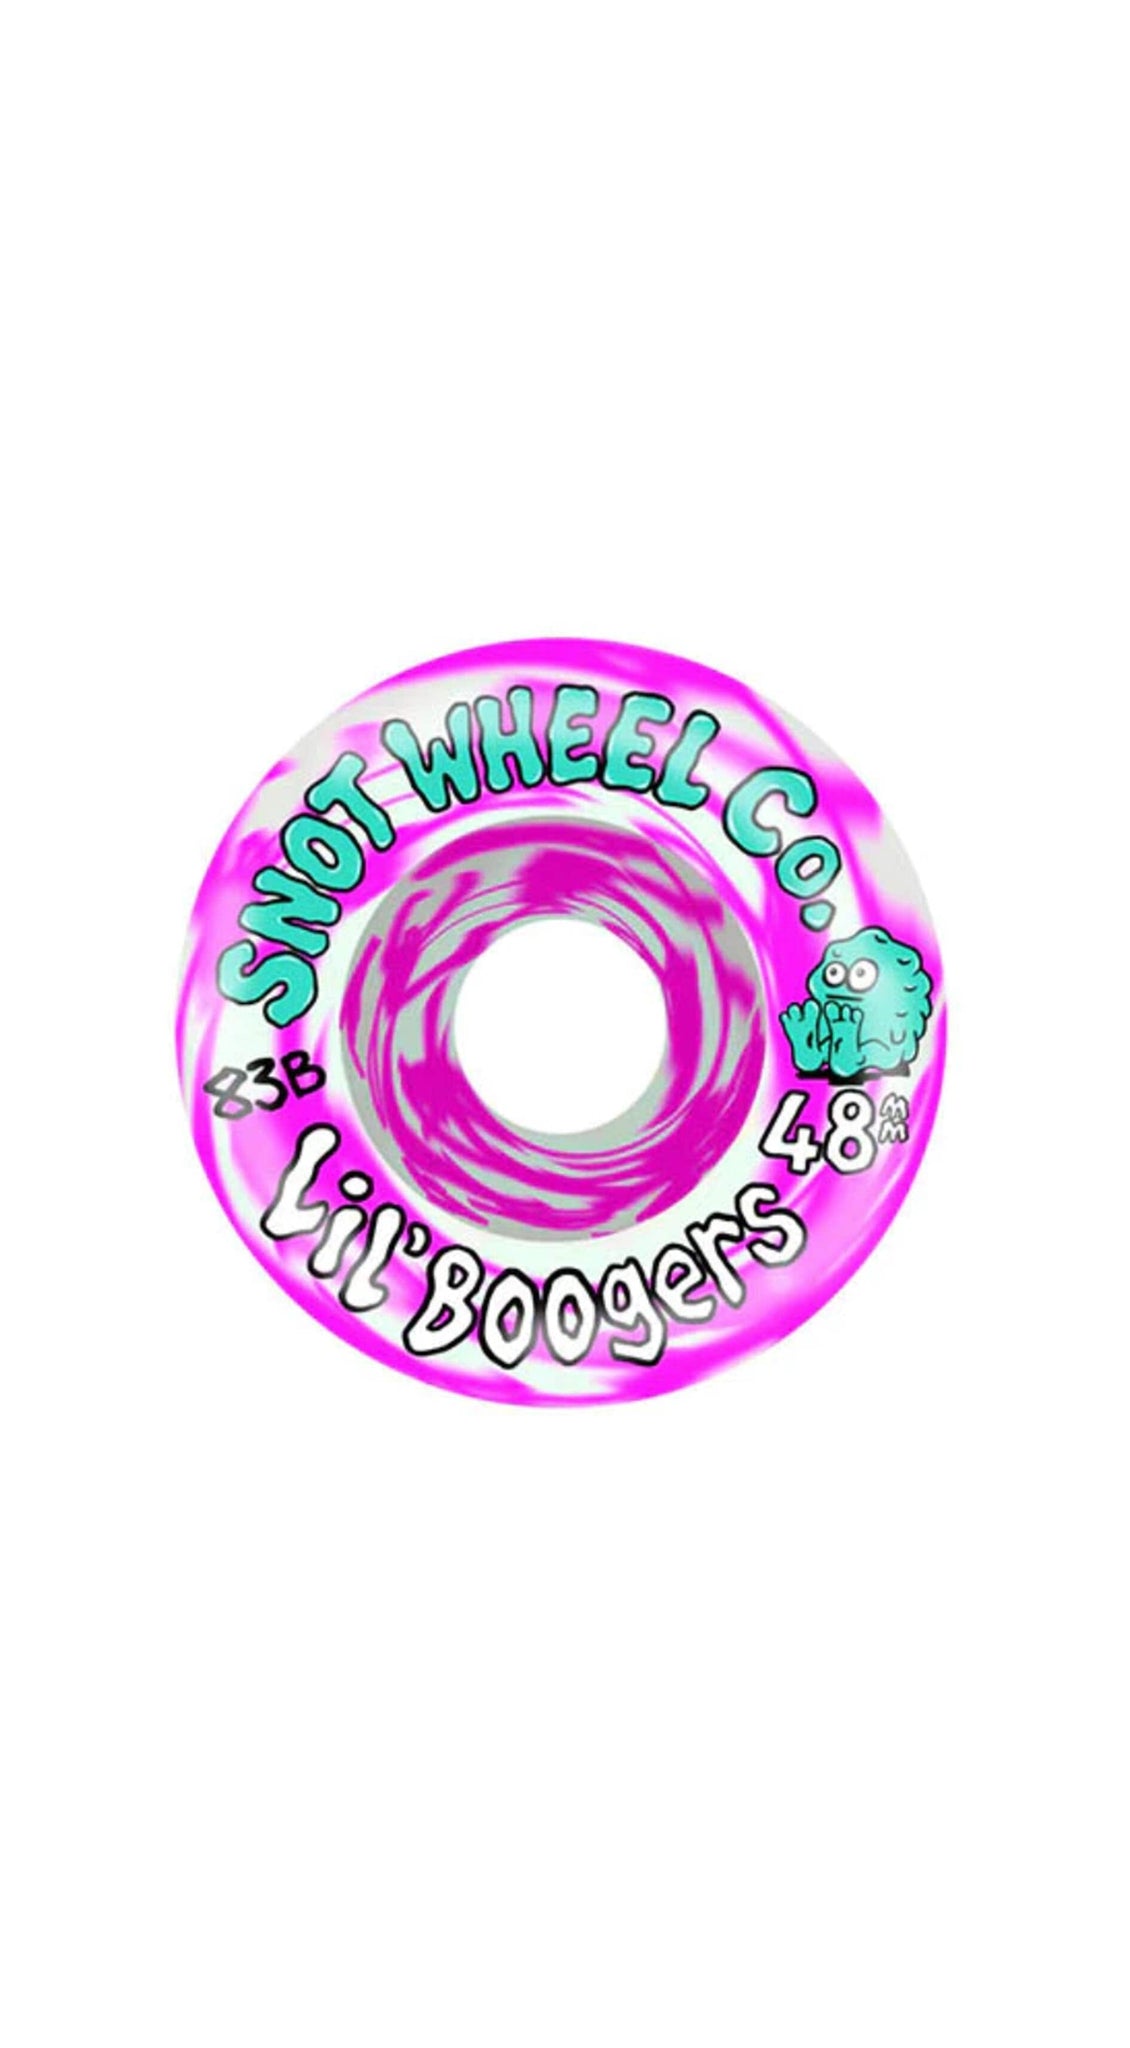 SNOT WHEELS Lil Boogers 45mm 101A Skateboard Wheels- Ruedas Ruedas SNOT WHEELS 